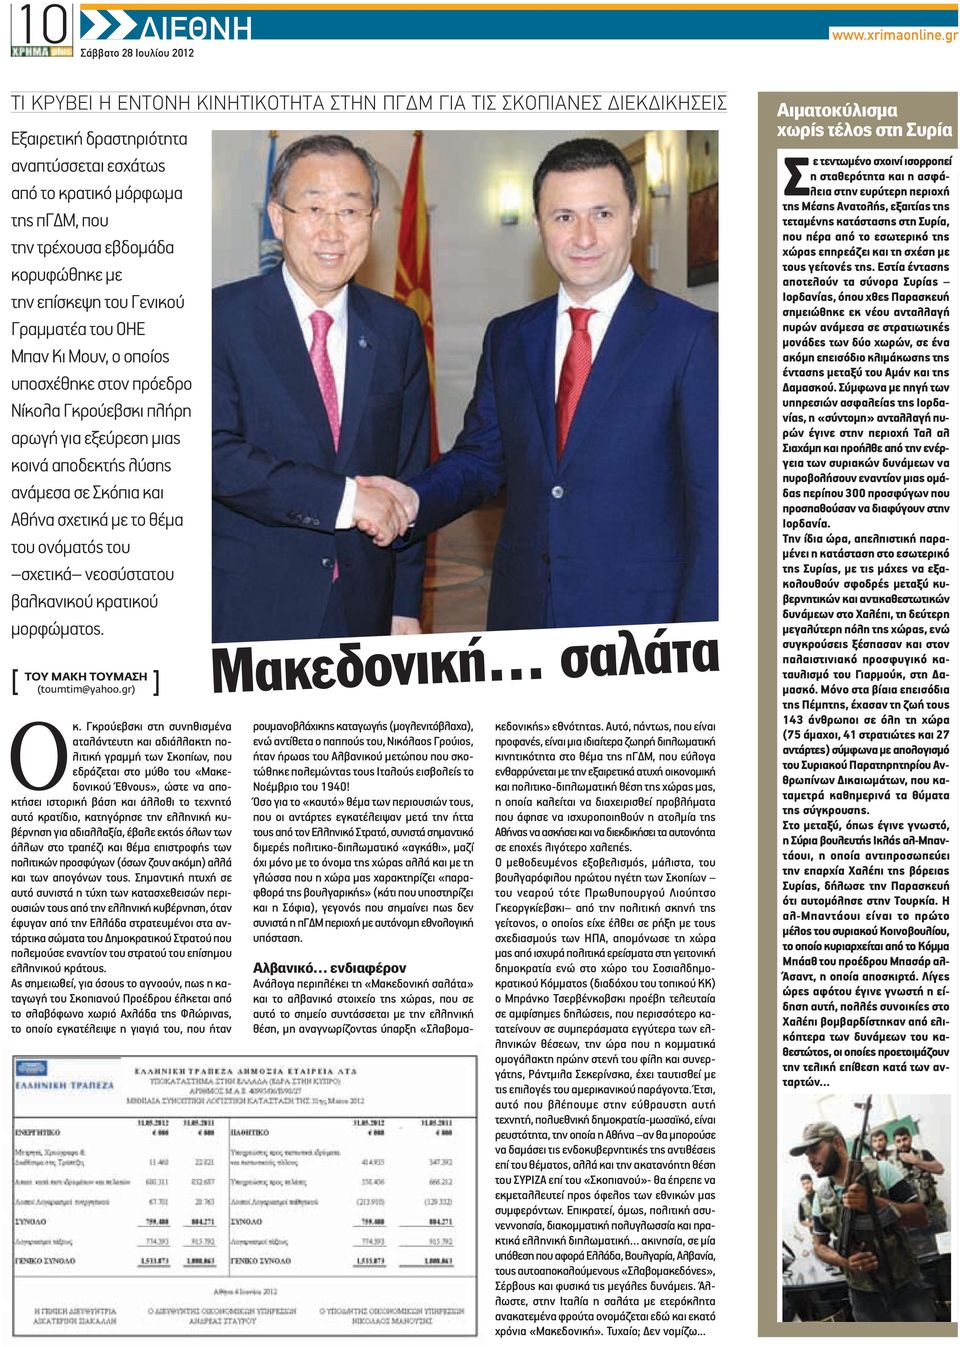 επίσκεψη του Γενικού Γραμματέα του ΟΗΕ Μπαν Κι Μουν, ο οποίος υποσχέθηκε στον πρόεδρο Νίκολα Γκρούεβσκι πλήρη αρωγή για εξεύρεση μιας κοινά αποδεκτής λύσης ανάμεσα σε Σκόπια και Αθήνα σχετικά με το